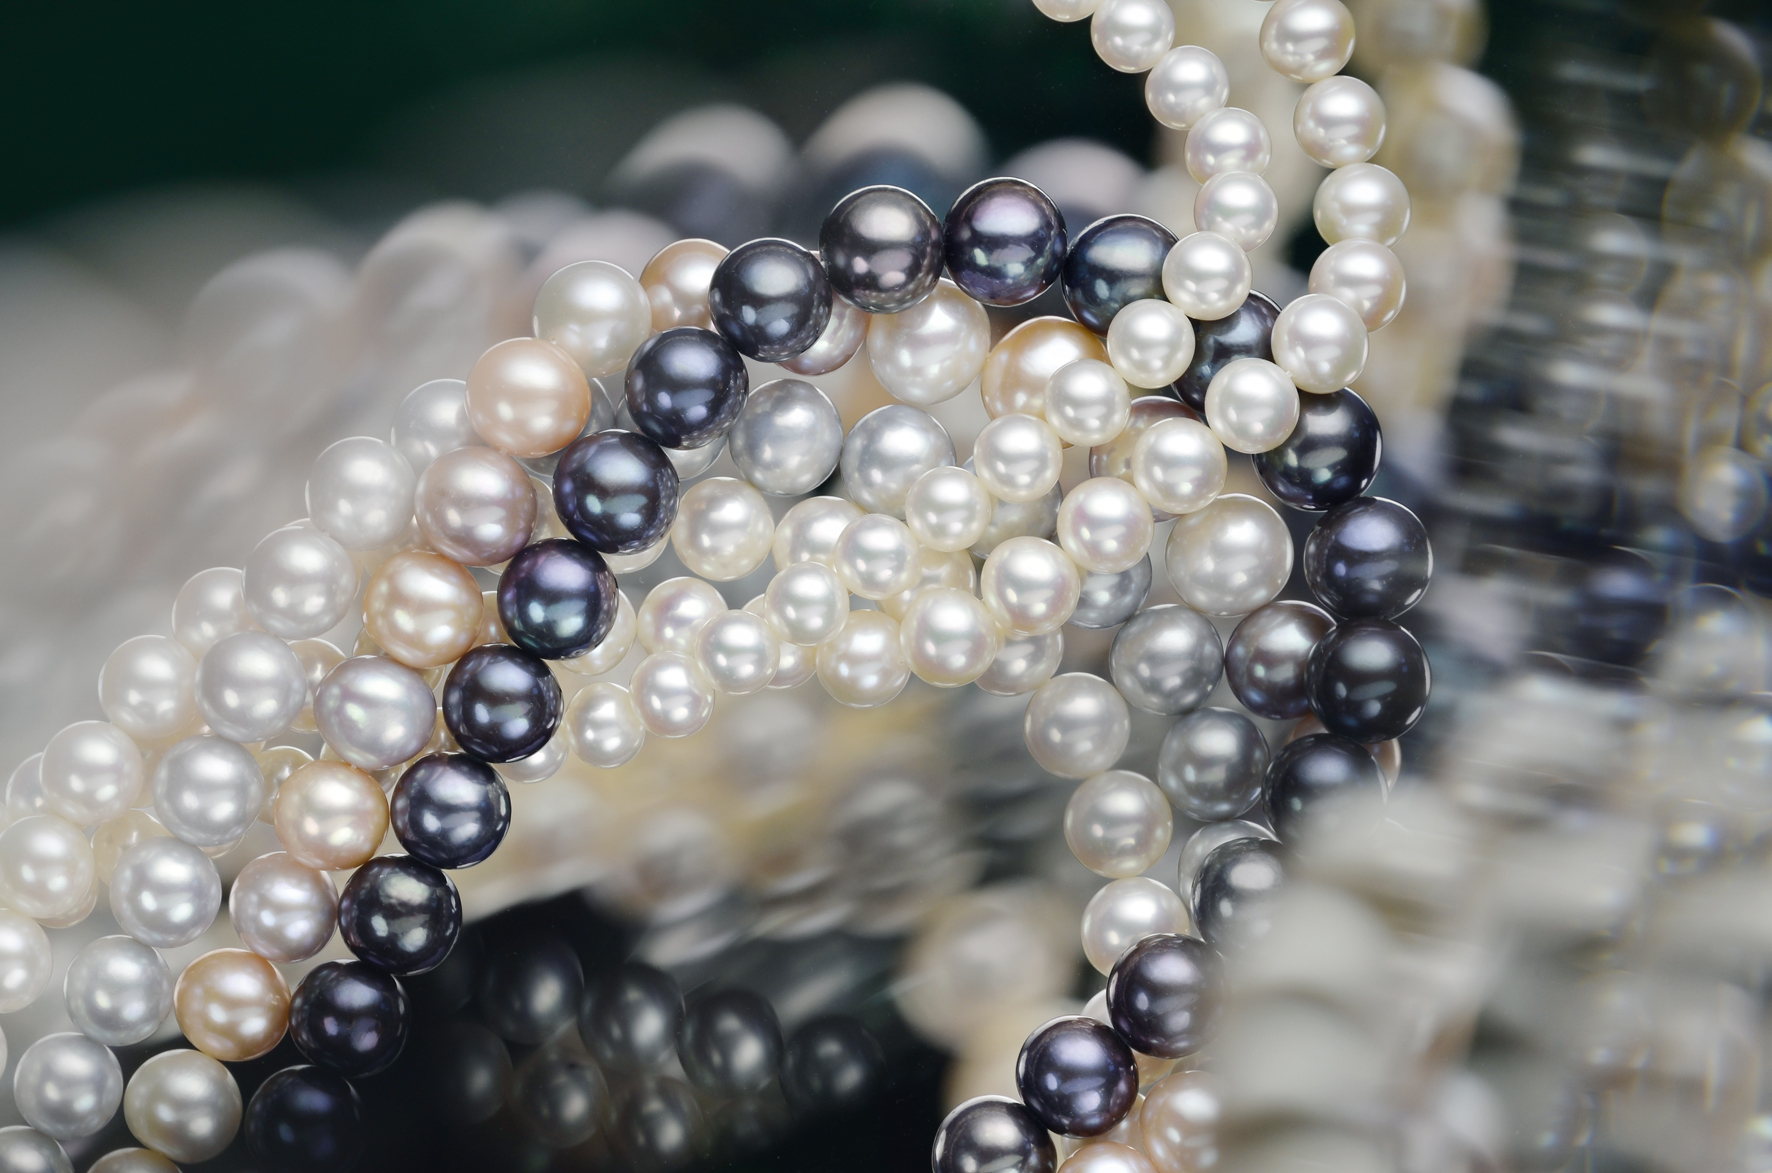 Kursprogramm 2020:
Kurs Nr. 10 Zauber der Perlen